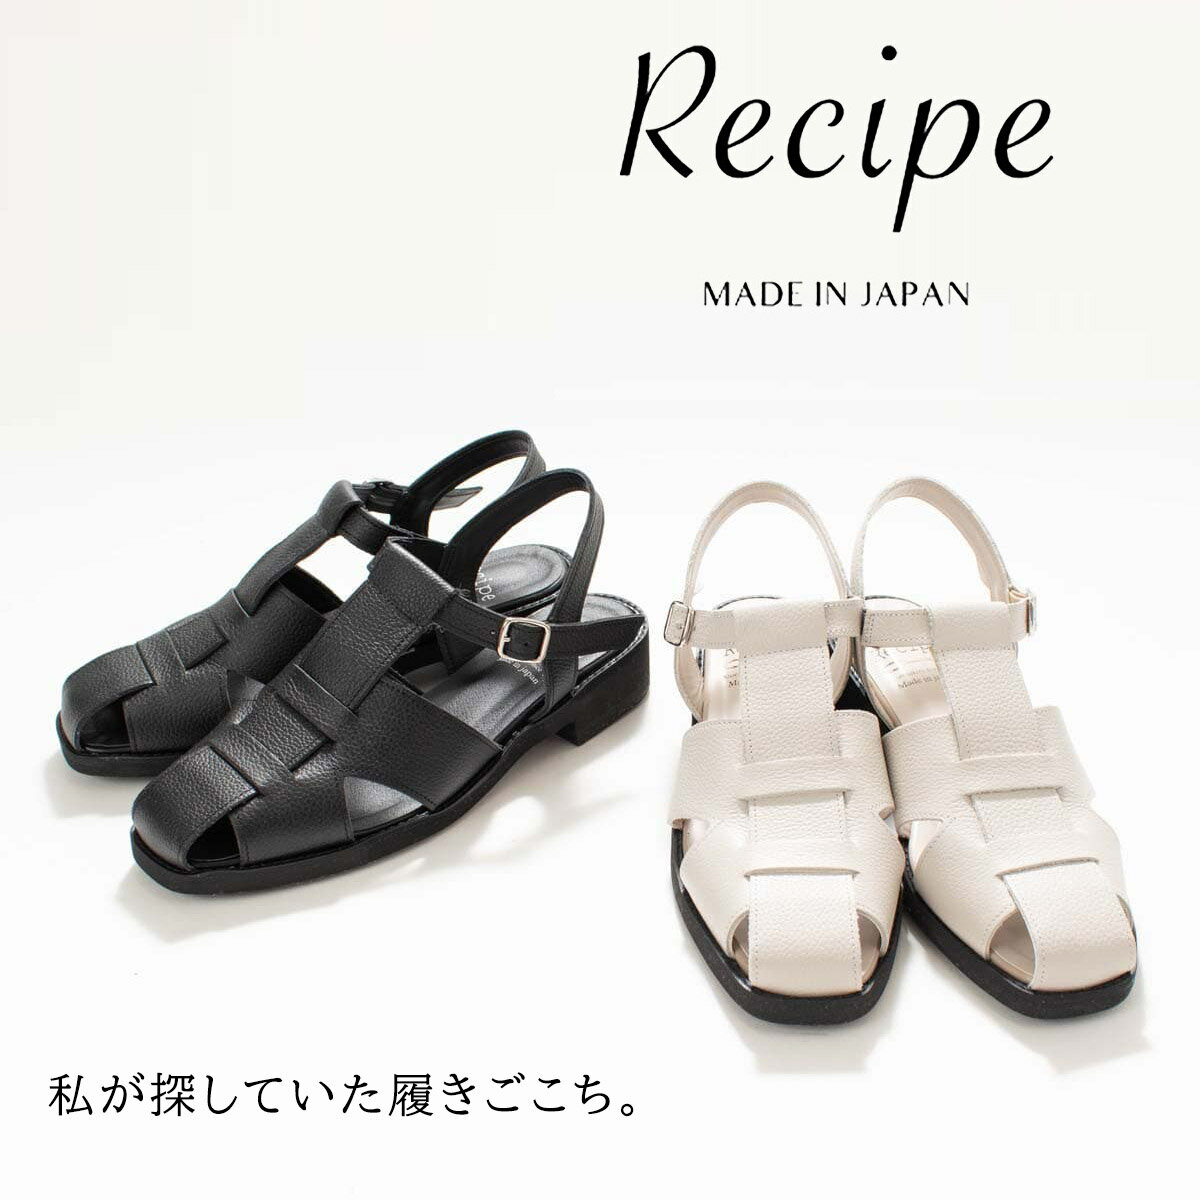 Recipe レシピ レザーグルカサンダル RP-518 レディース 革靴 レザー サンダル 疲れにくい 歩きやすい ゆったり 40代 50代 上品 おしゃれ ナチュラル シンプル カジュアル やわらかい 人気